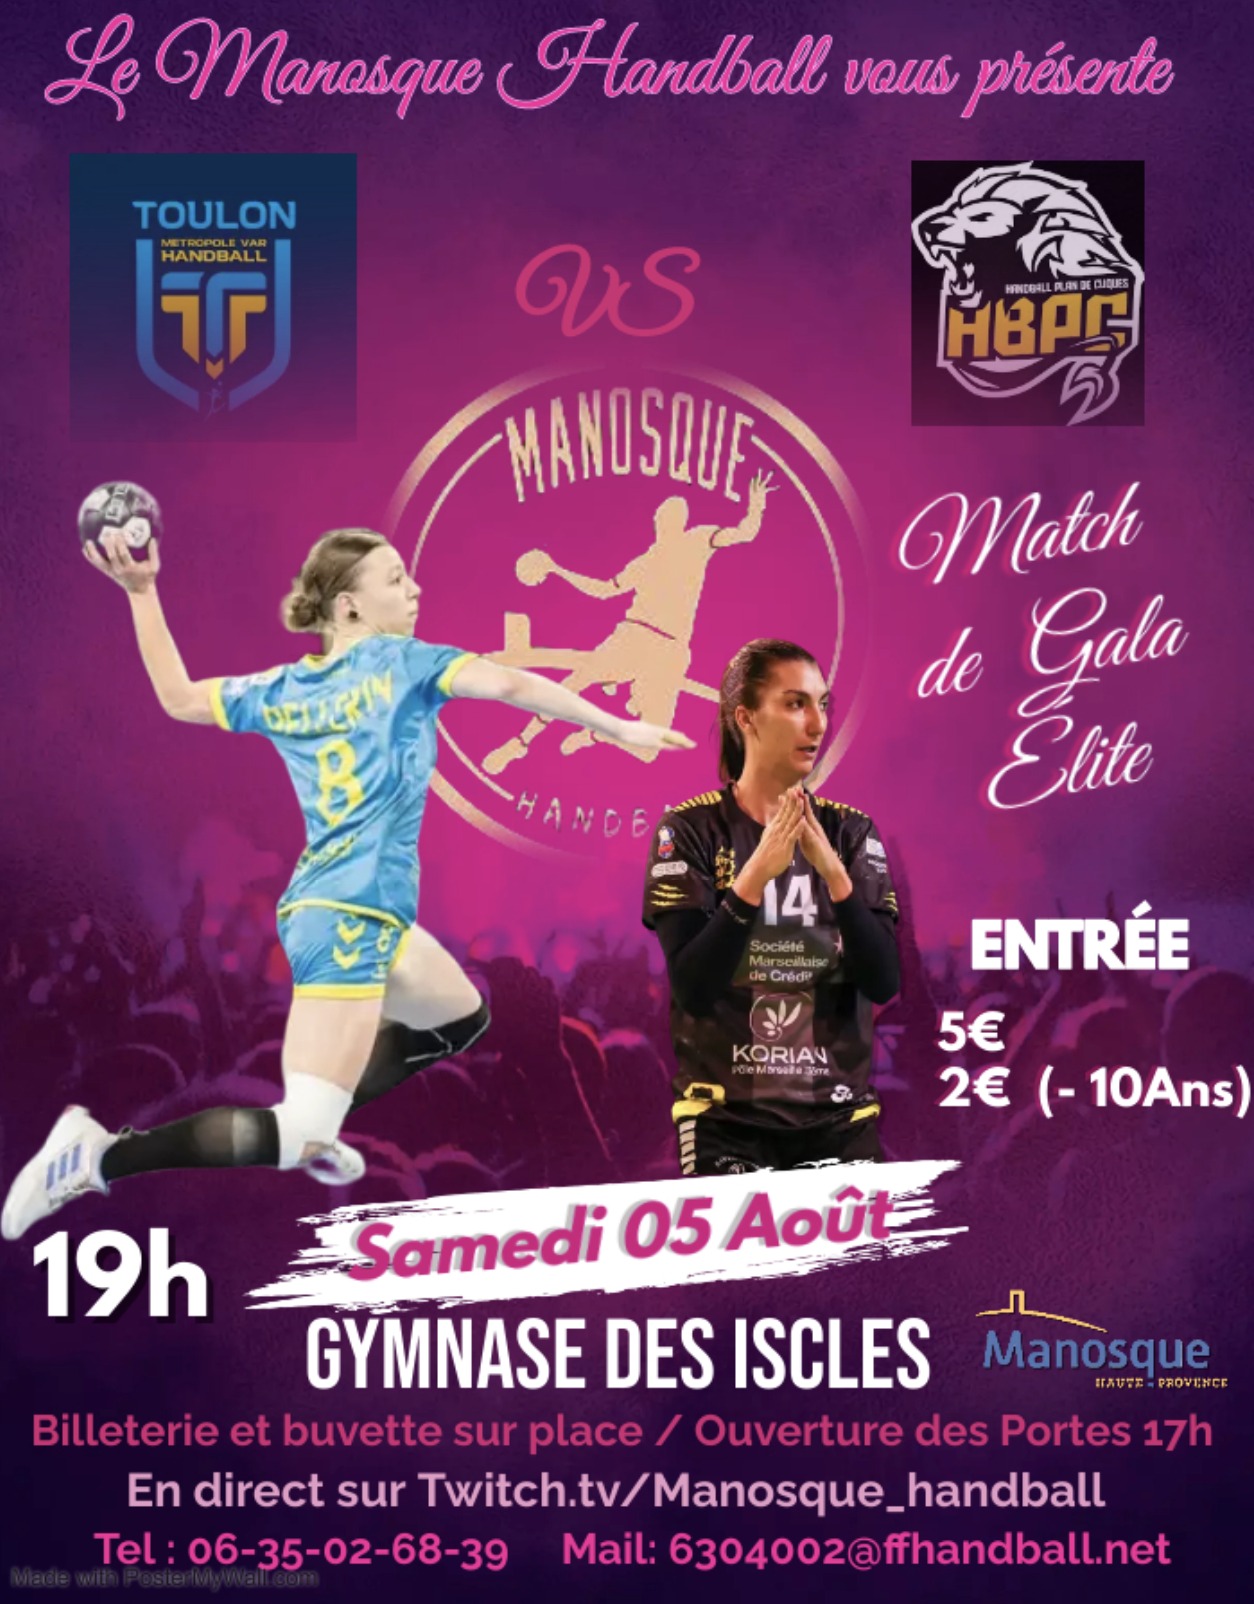 Match de gala le 5 août au gymnase des Iscles organisé par le manosque handball